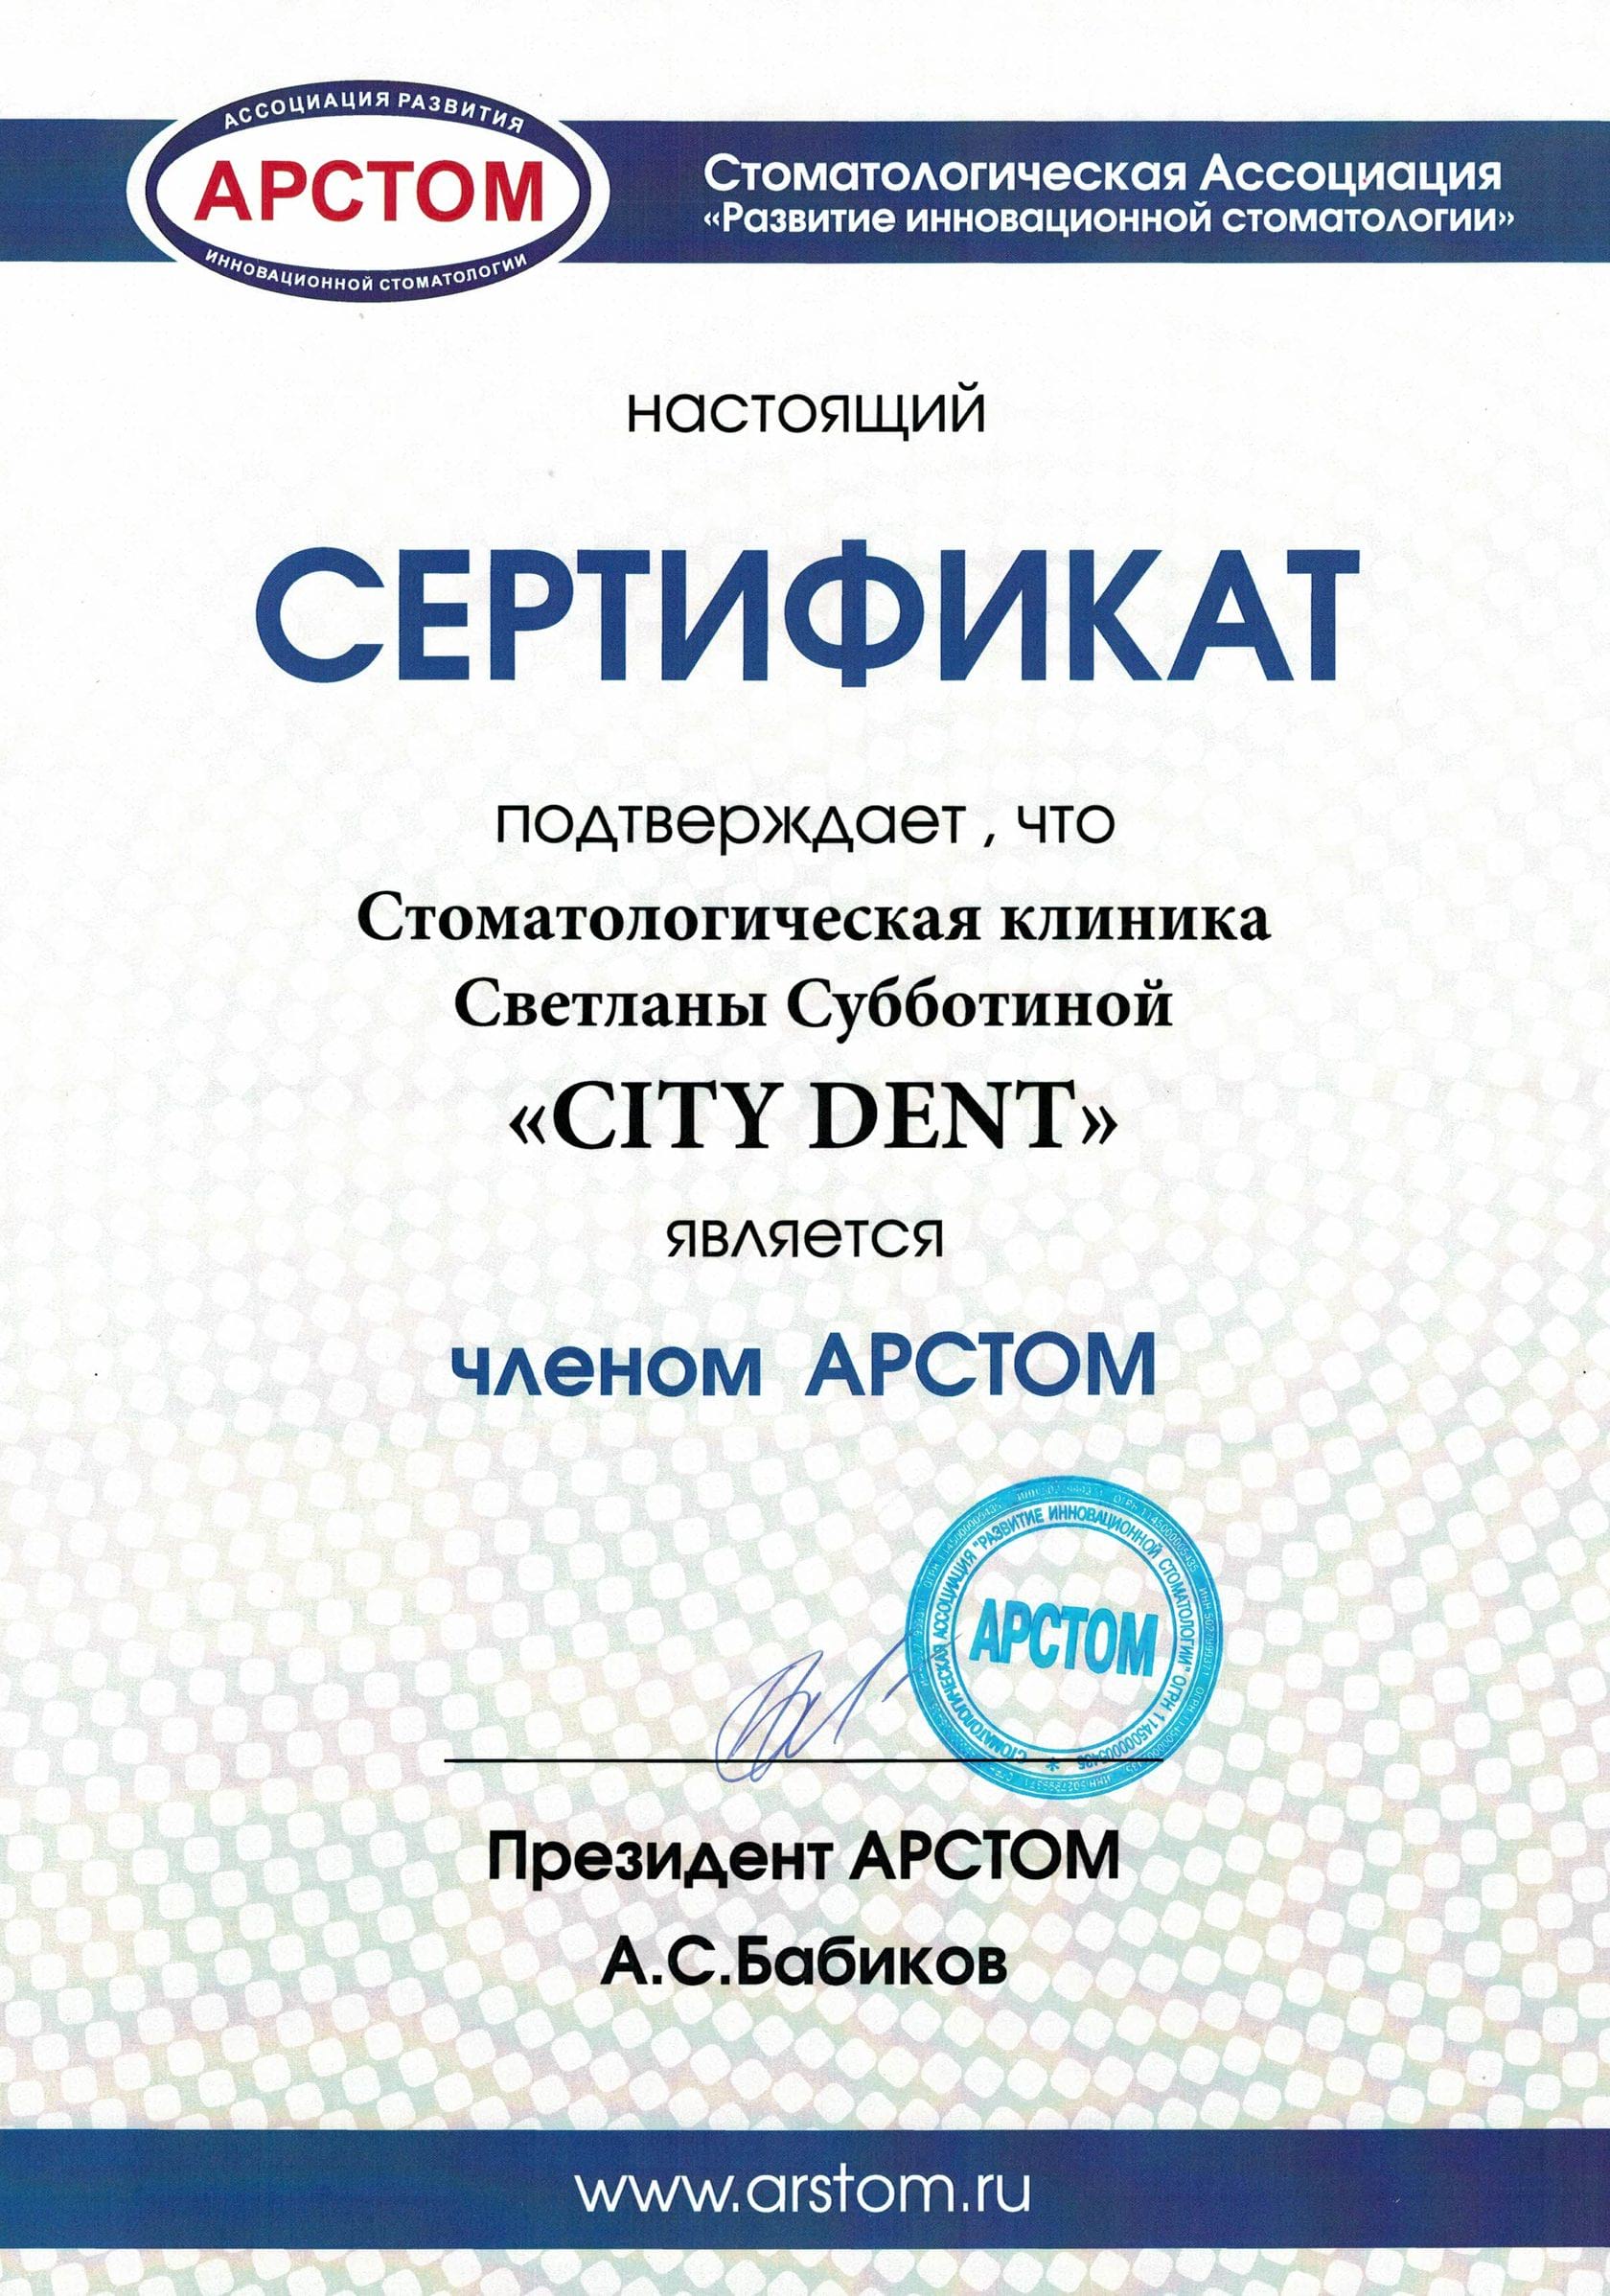 Получили сертификат Артстом